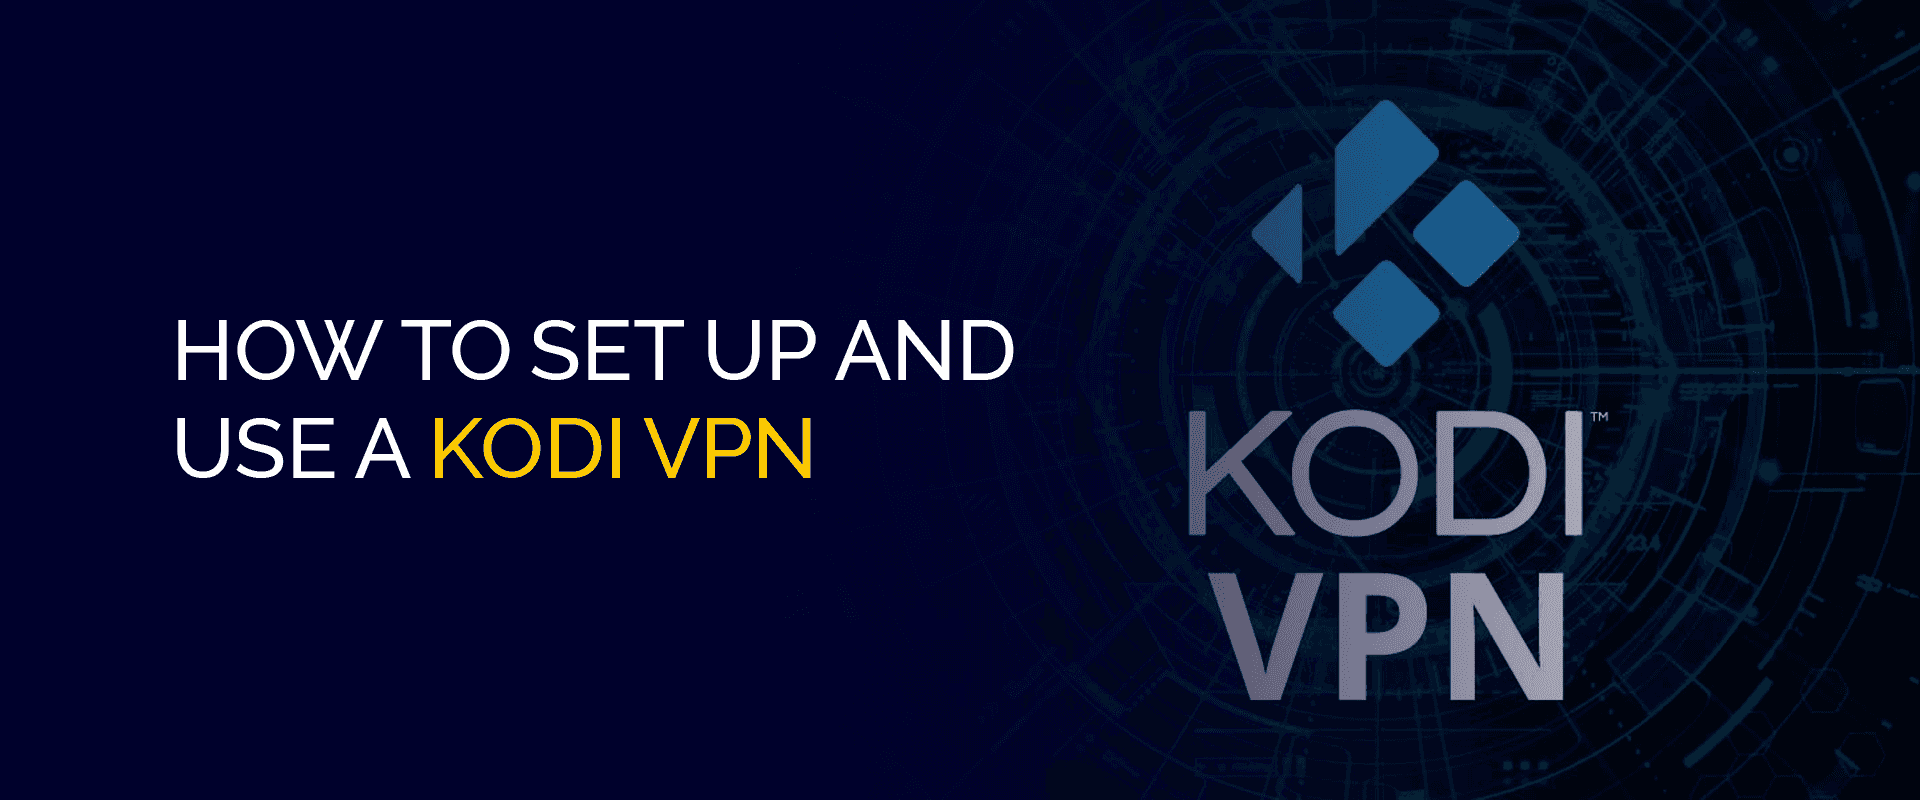 Kodi VPNを設定して使用する方法